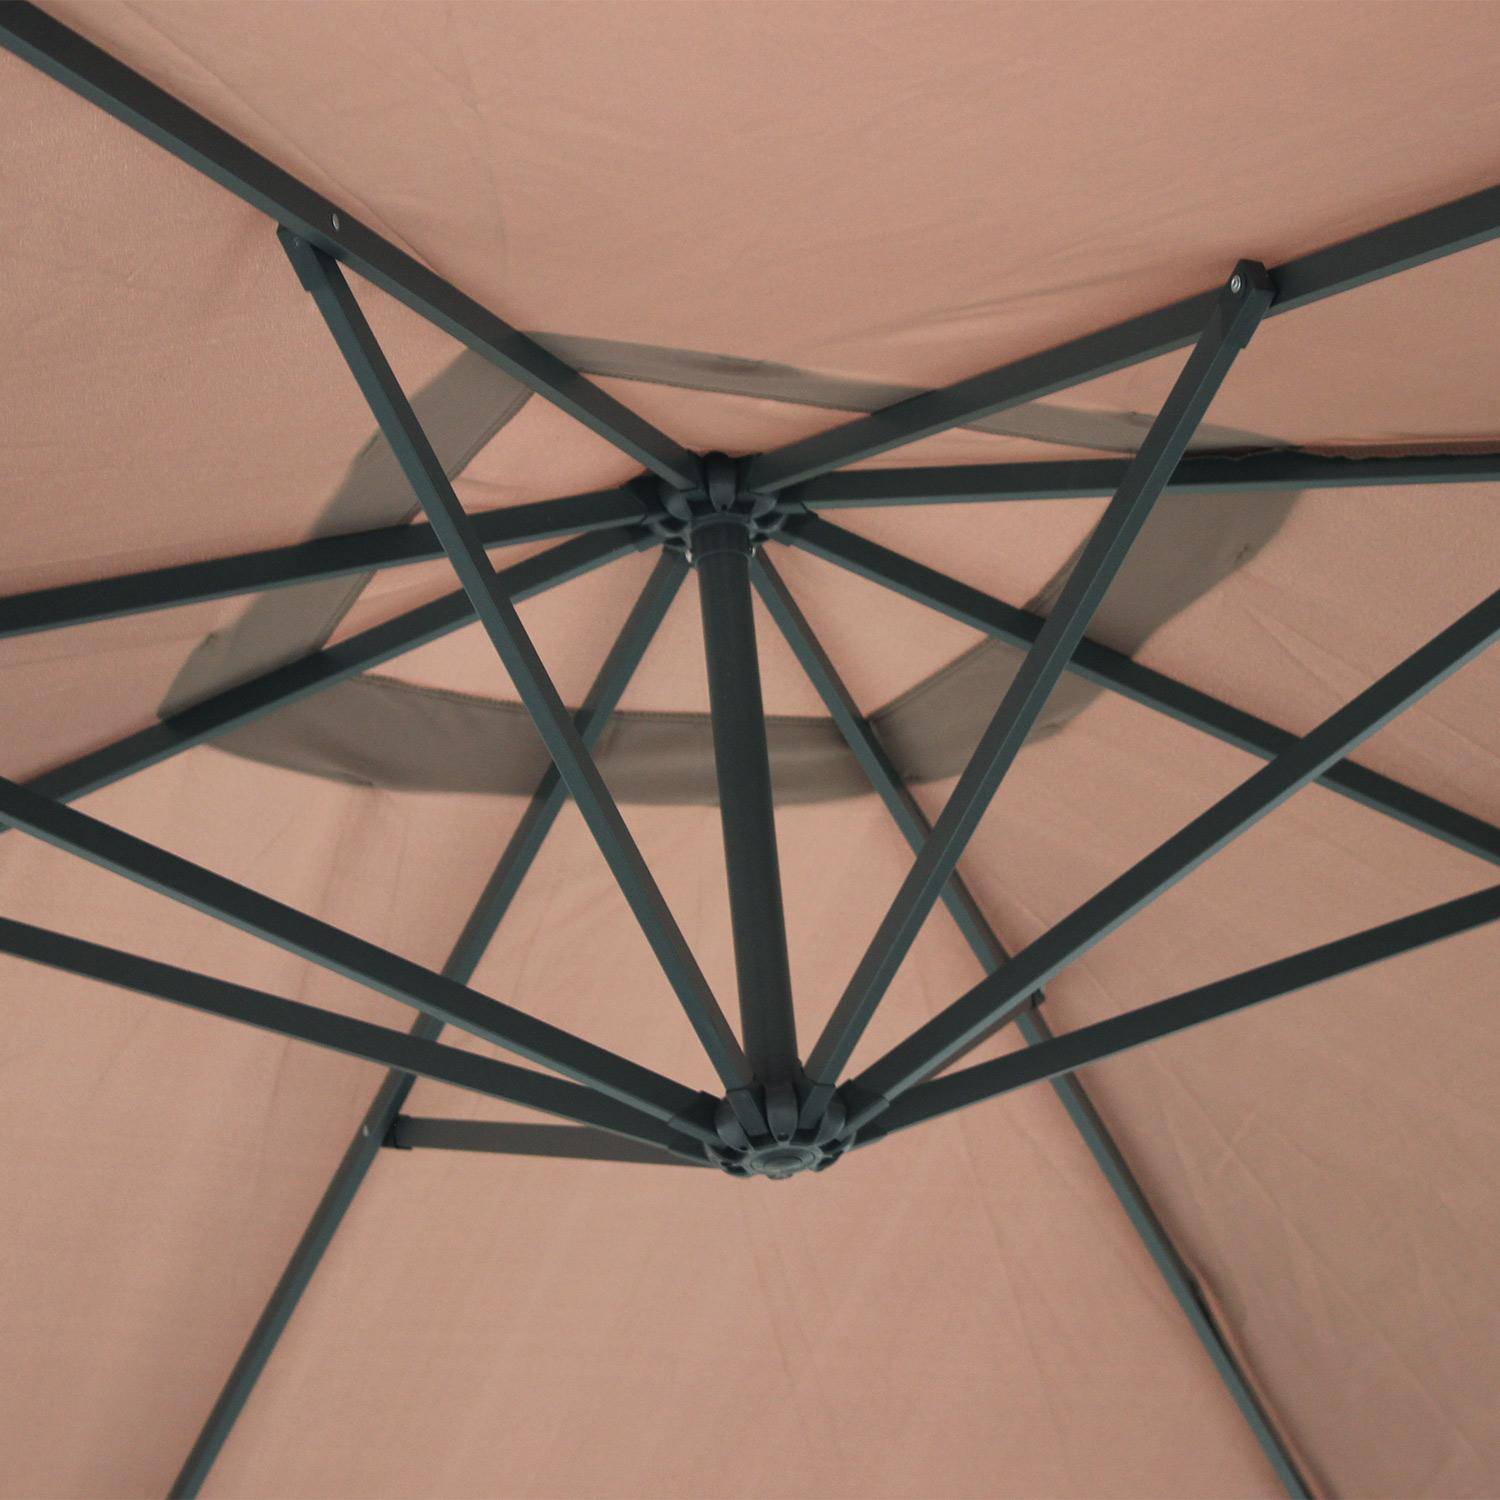 Parasol, excéntrico cuadrado de 3x3m - Pardo - HARDELOT,sweeek,Photo6